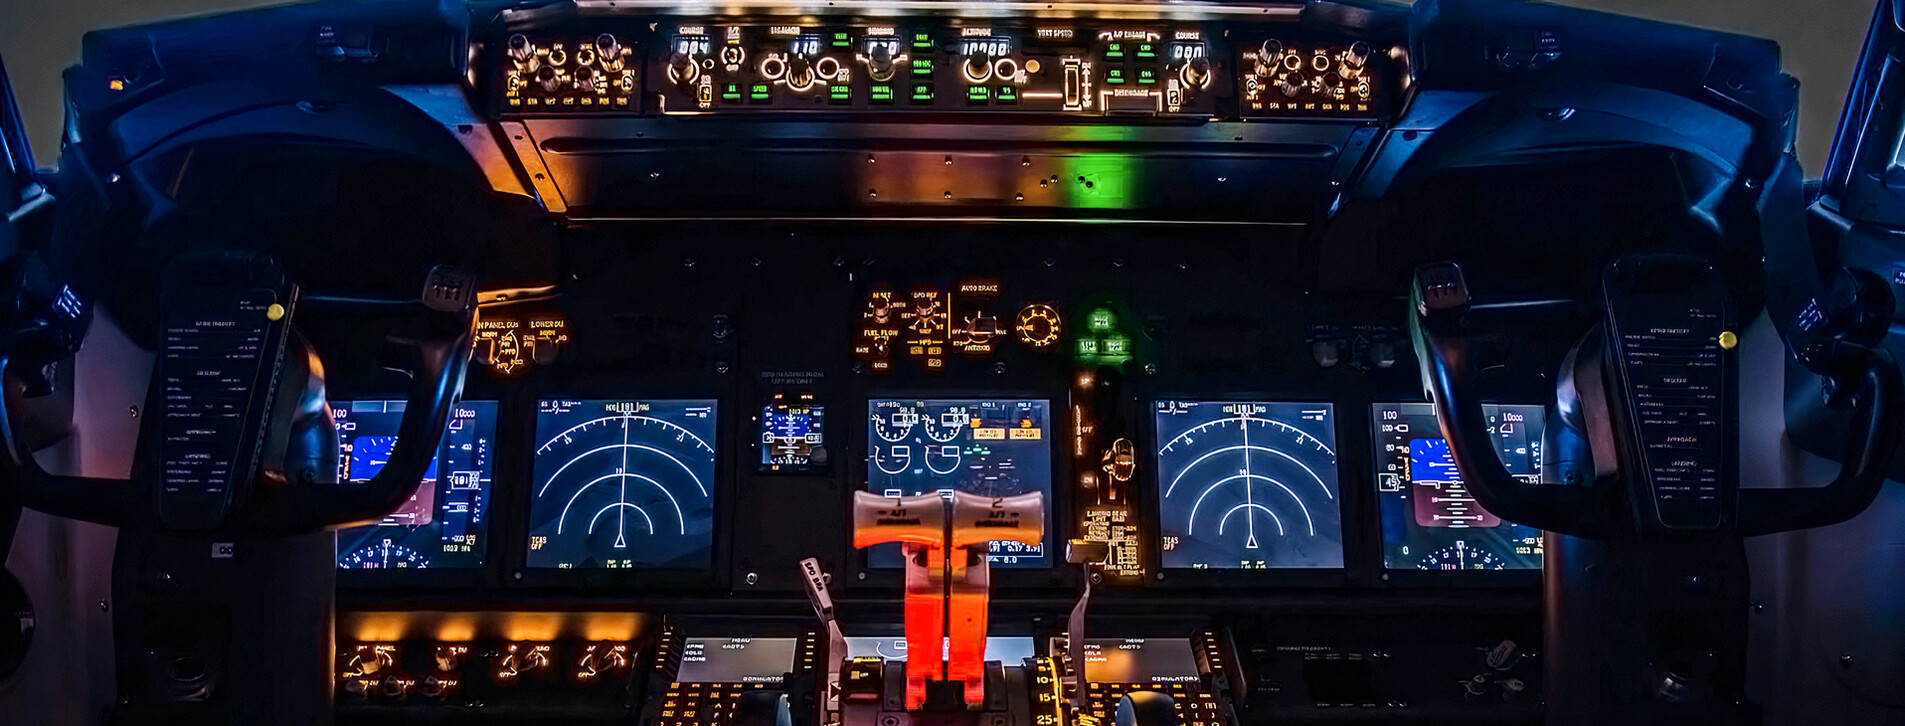 Fotoğraf 1 - İki Kişi için Venyo Boeing 737-800 NG Uçuş Simulatörü ile Profesyonel Eğitim